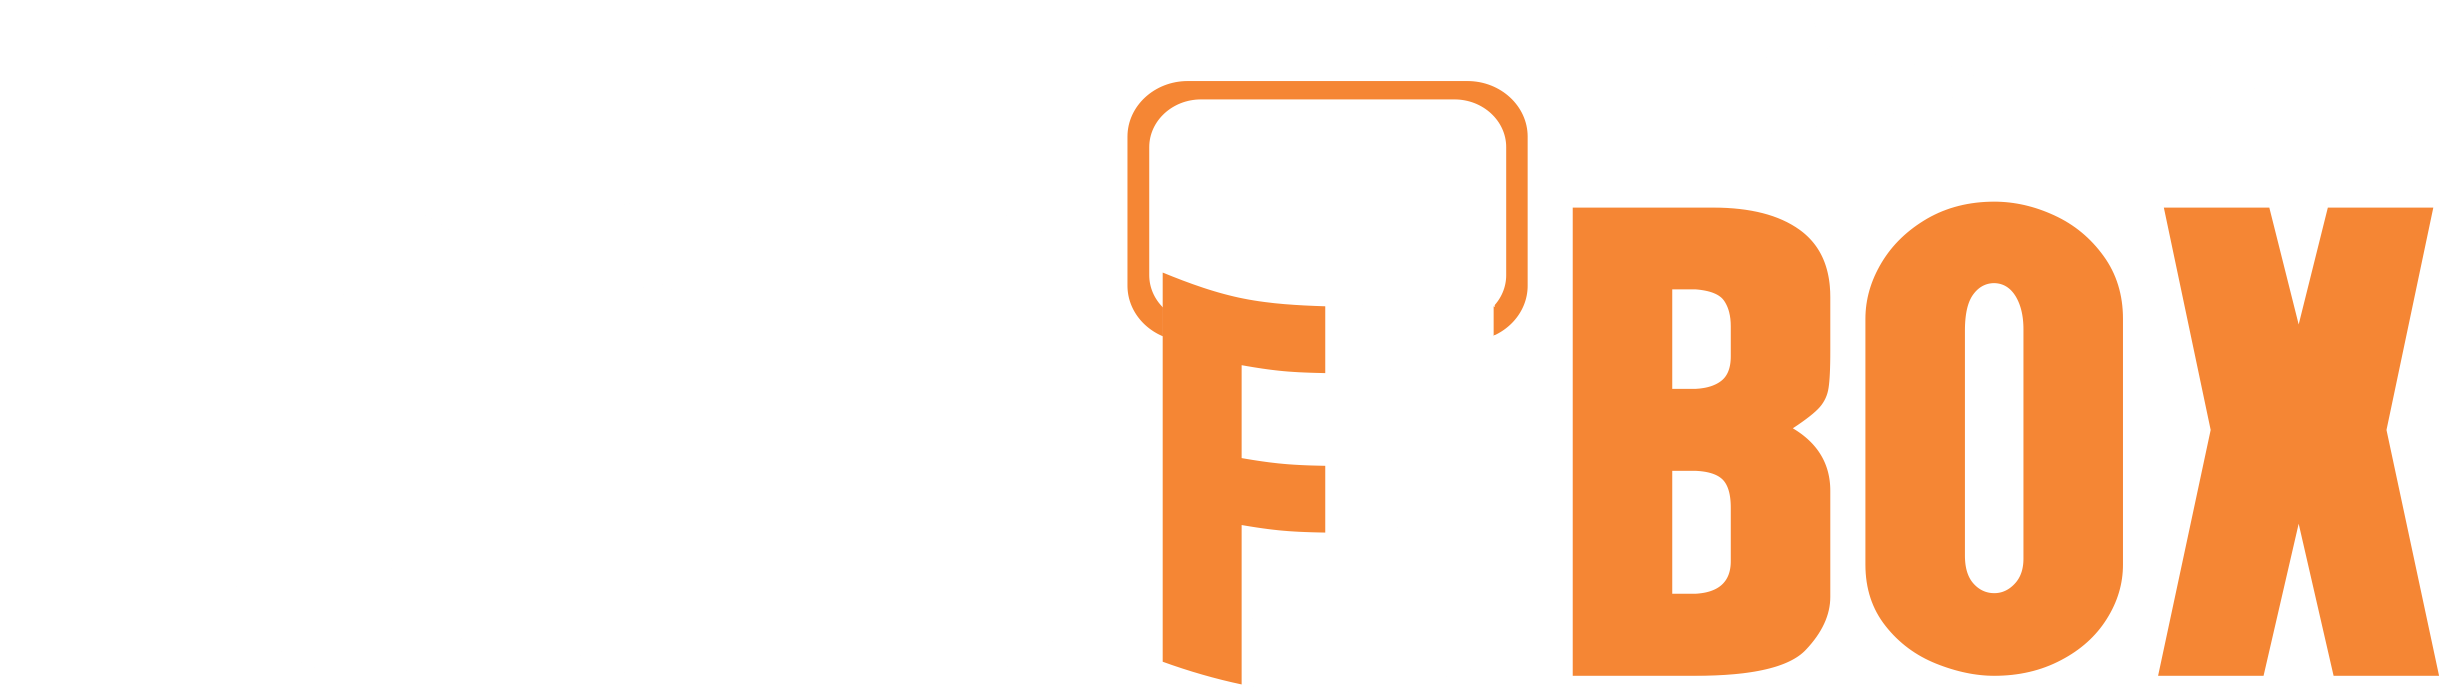 Foodbox logo